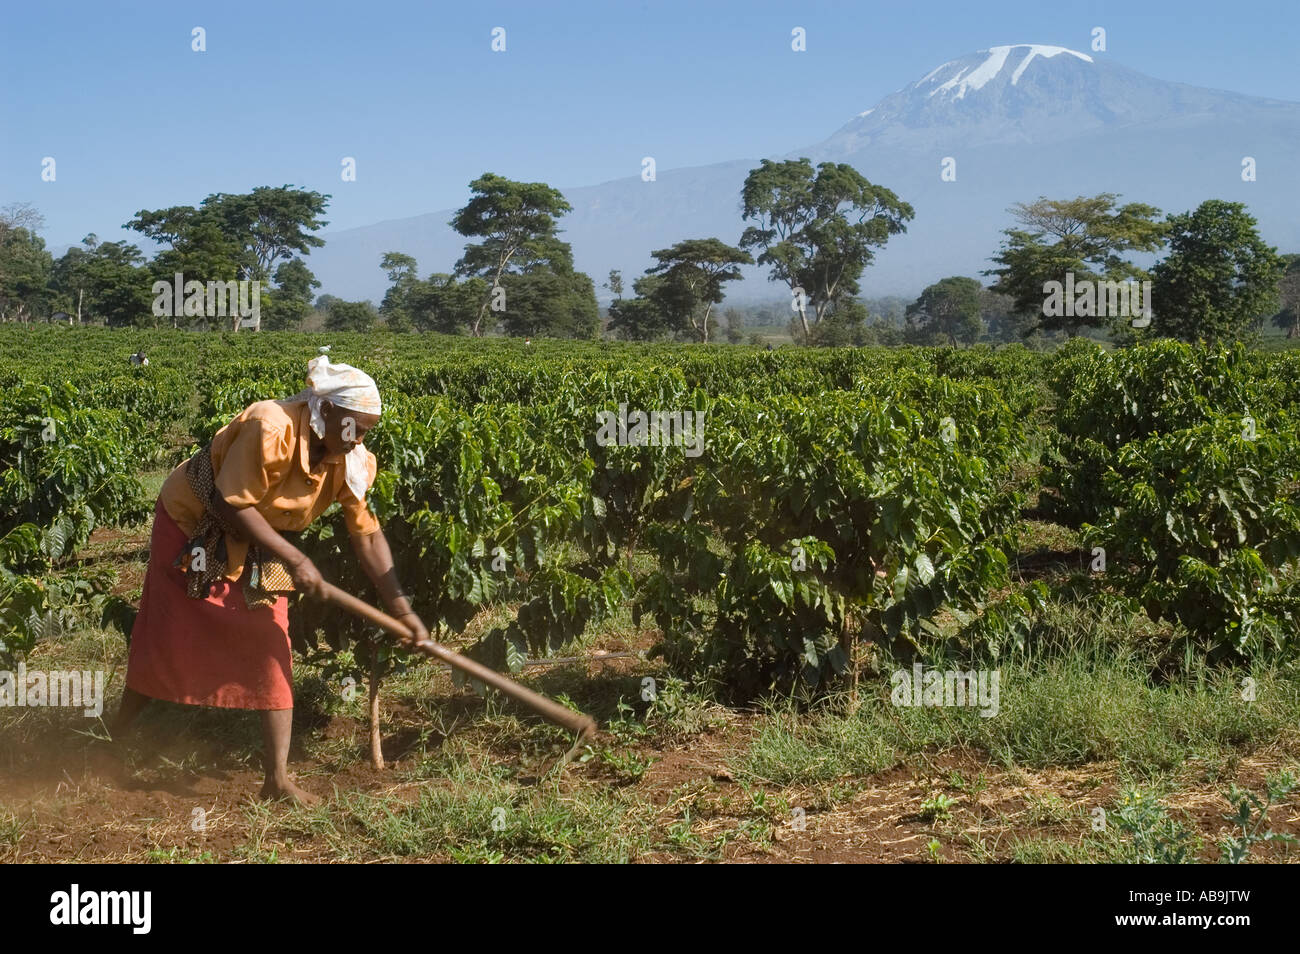 Femme désherber une plantation de café avec une binette - Coffea arabica - région de Kilimandjaro en Tanzanie Banque D'Images